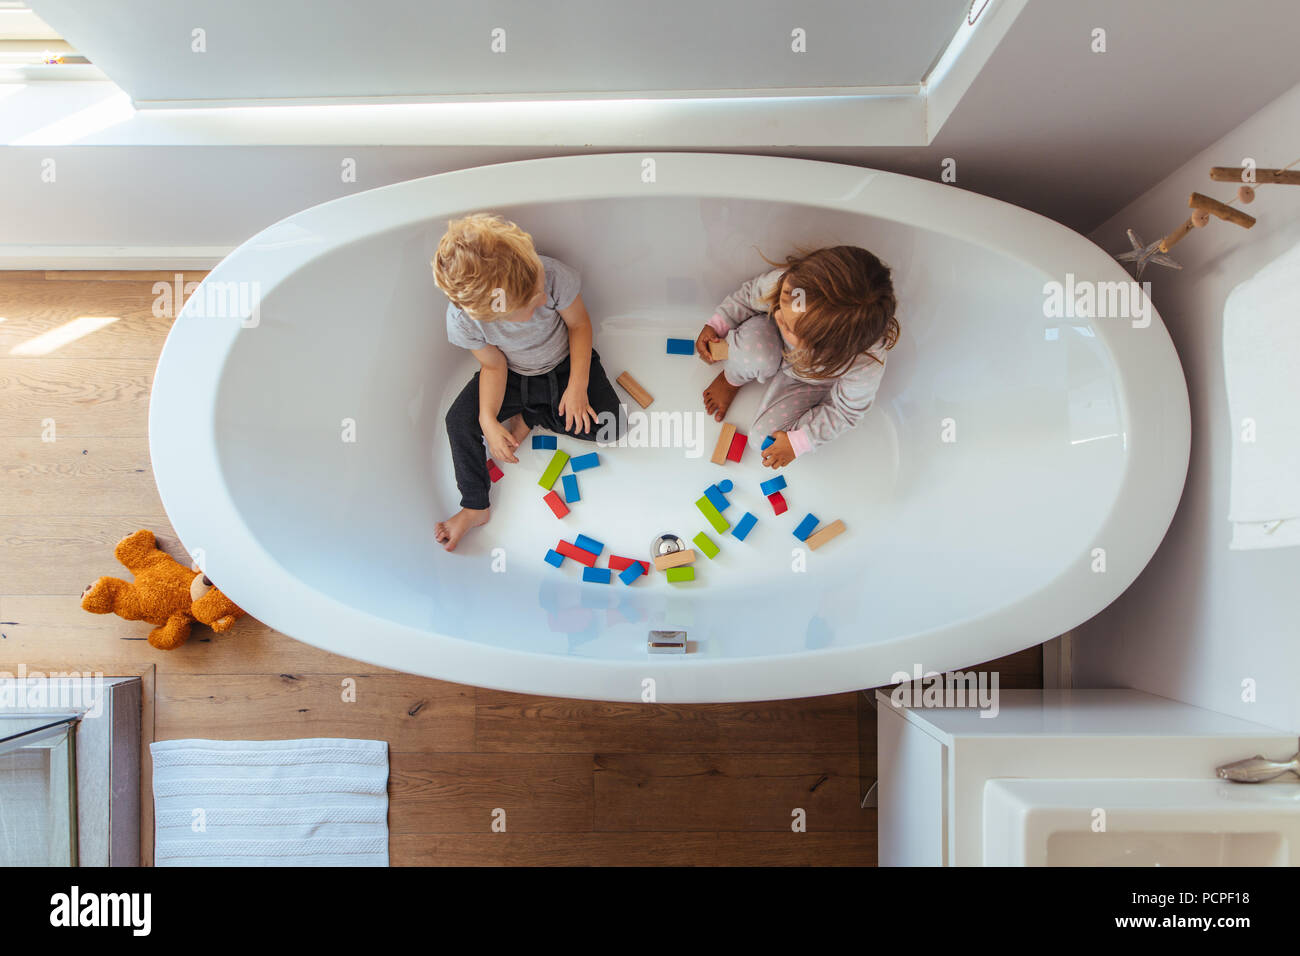 Blick von oben der Geschwister sitzen in der Badewanne mit Holz unterbauen. Kleinen Jungen und Mädchen spielen in einer Badewanne zu Hause. Stockfoto